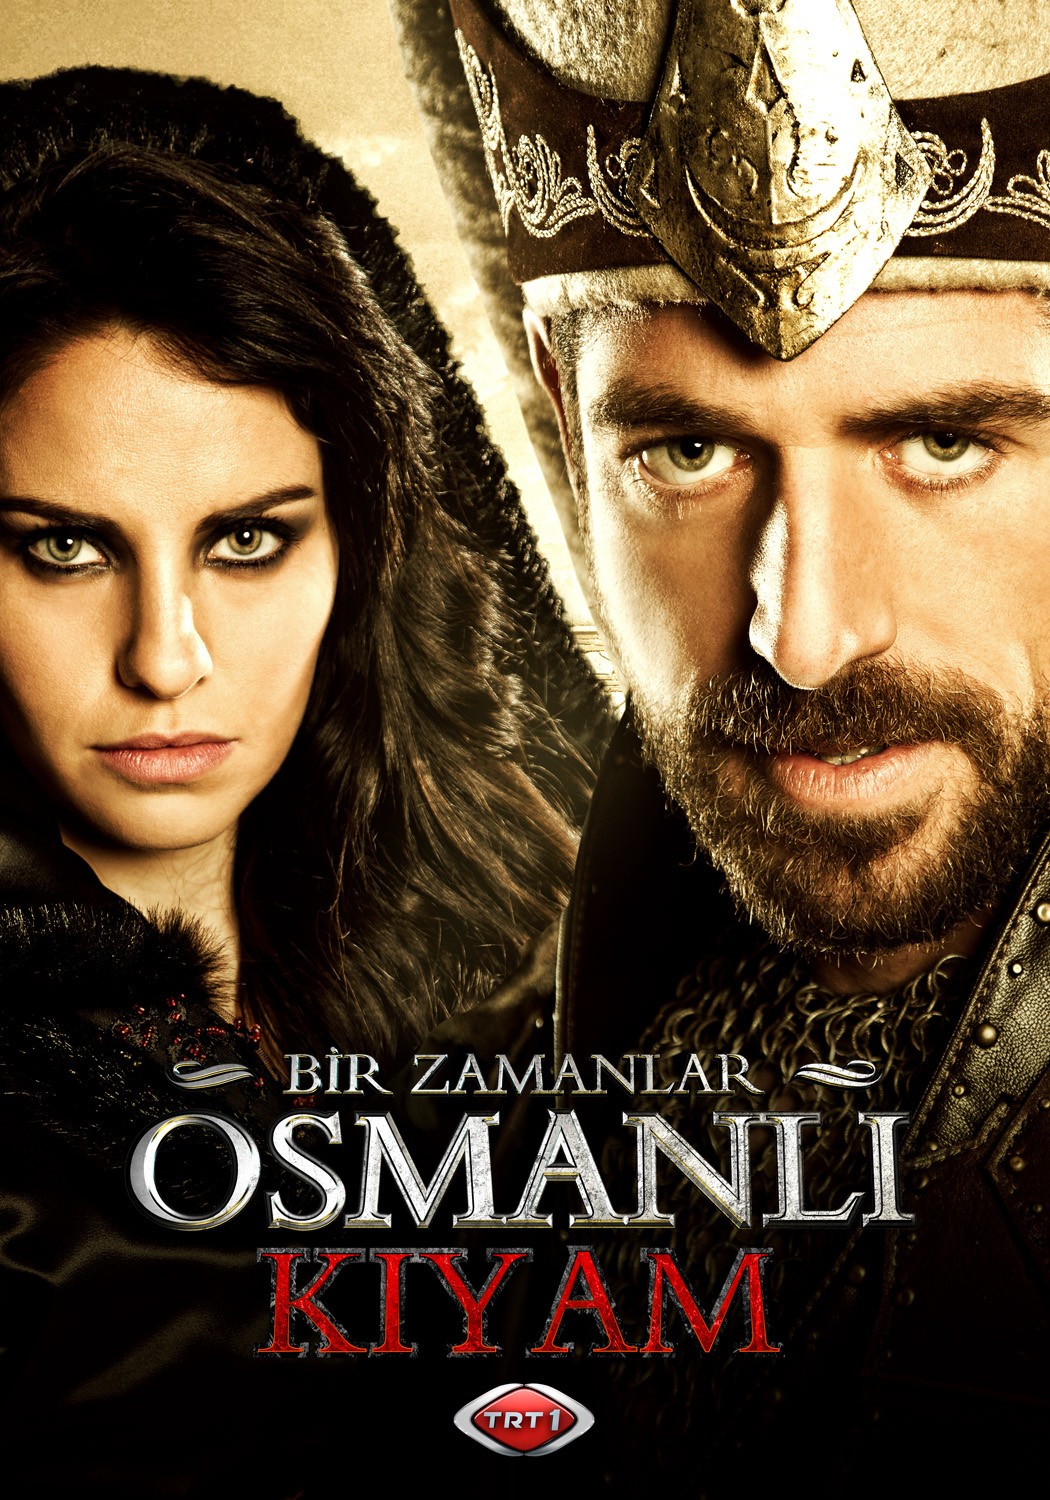 Bir Zamanlar Osmanli - KIYAM movie